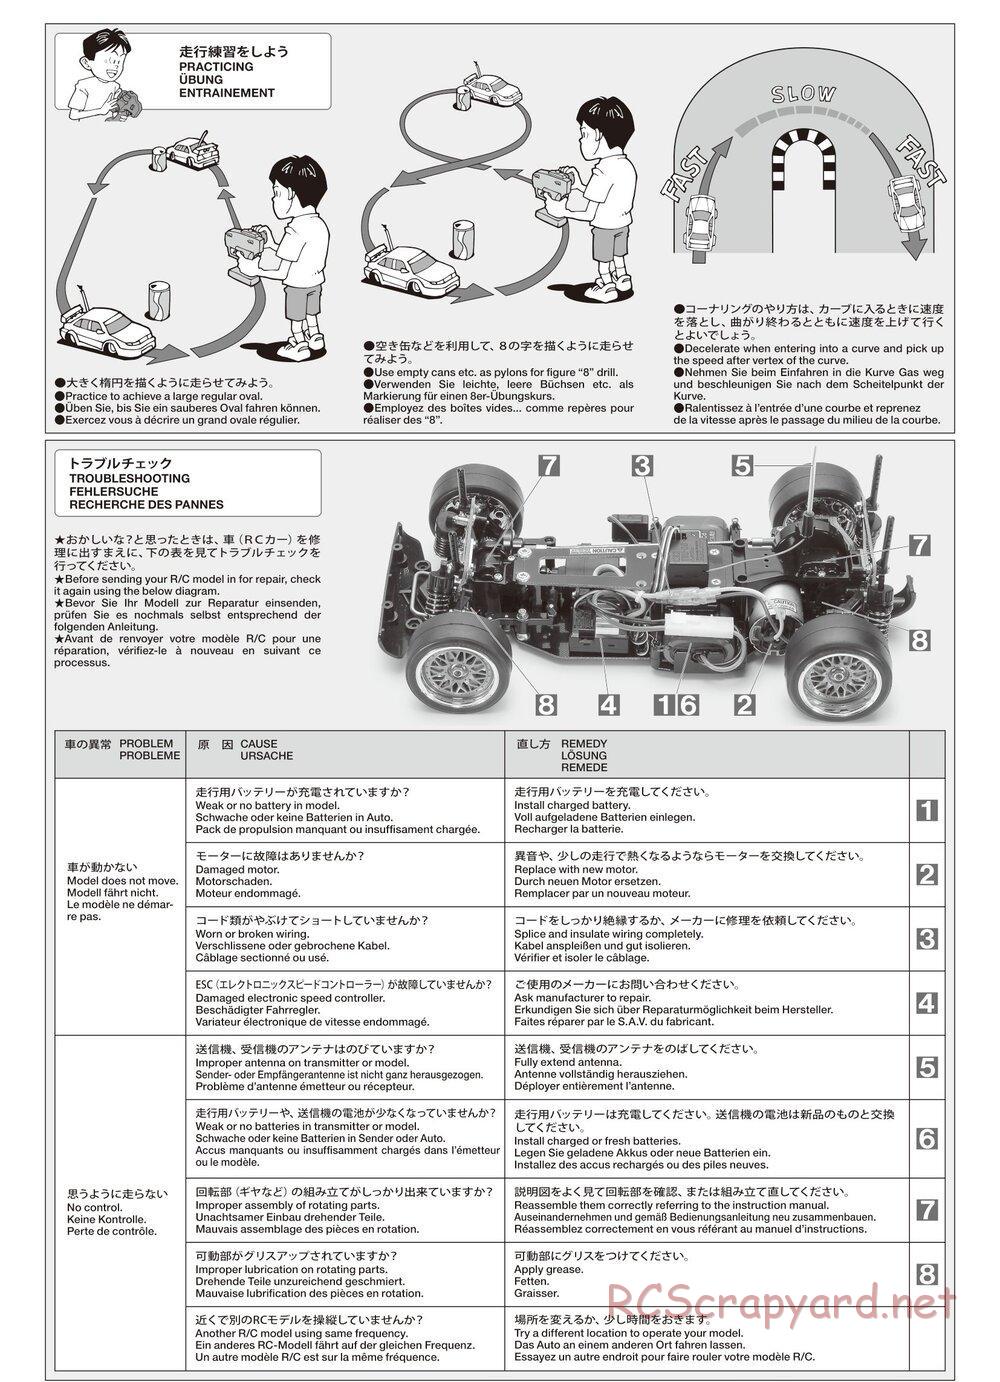 Tamiya - TA02SW Chassis - Manual - Page 23